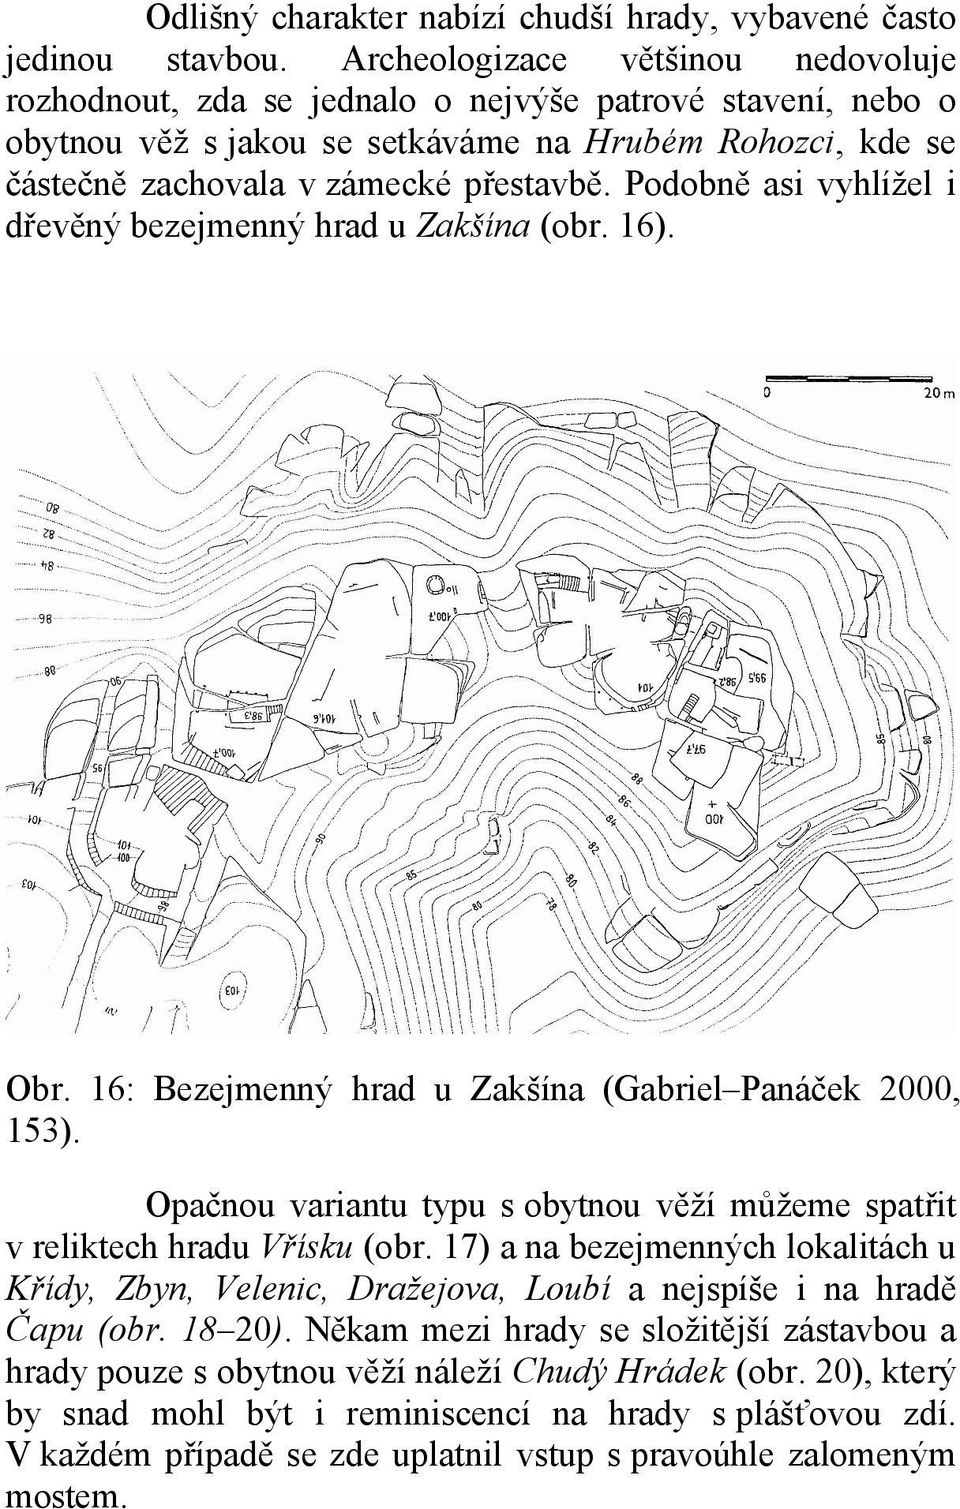 Podobně asi vyhlížel i dřevěný bezejmenný hrad u Zakšína (obr. 16). Obr. 16: Bezejmenný hrad u Zakšína (Gabriel Panáček 2000, 153).